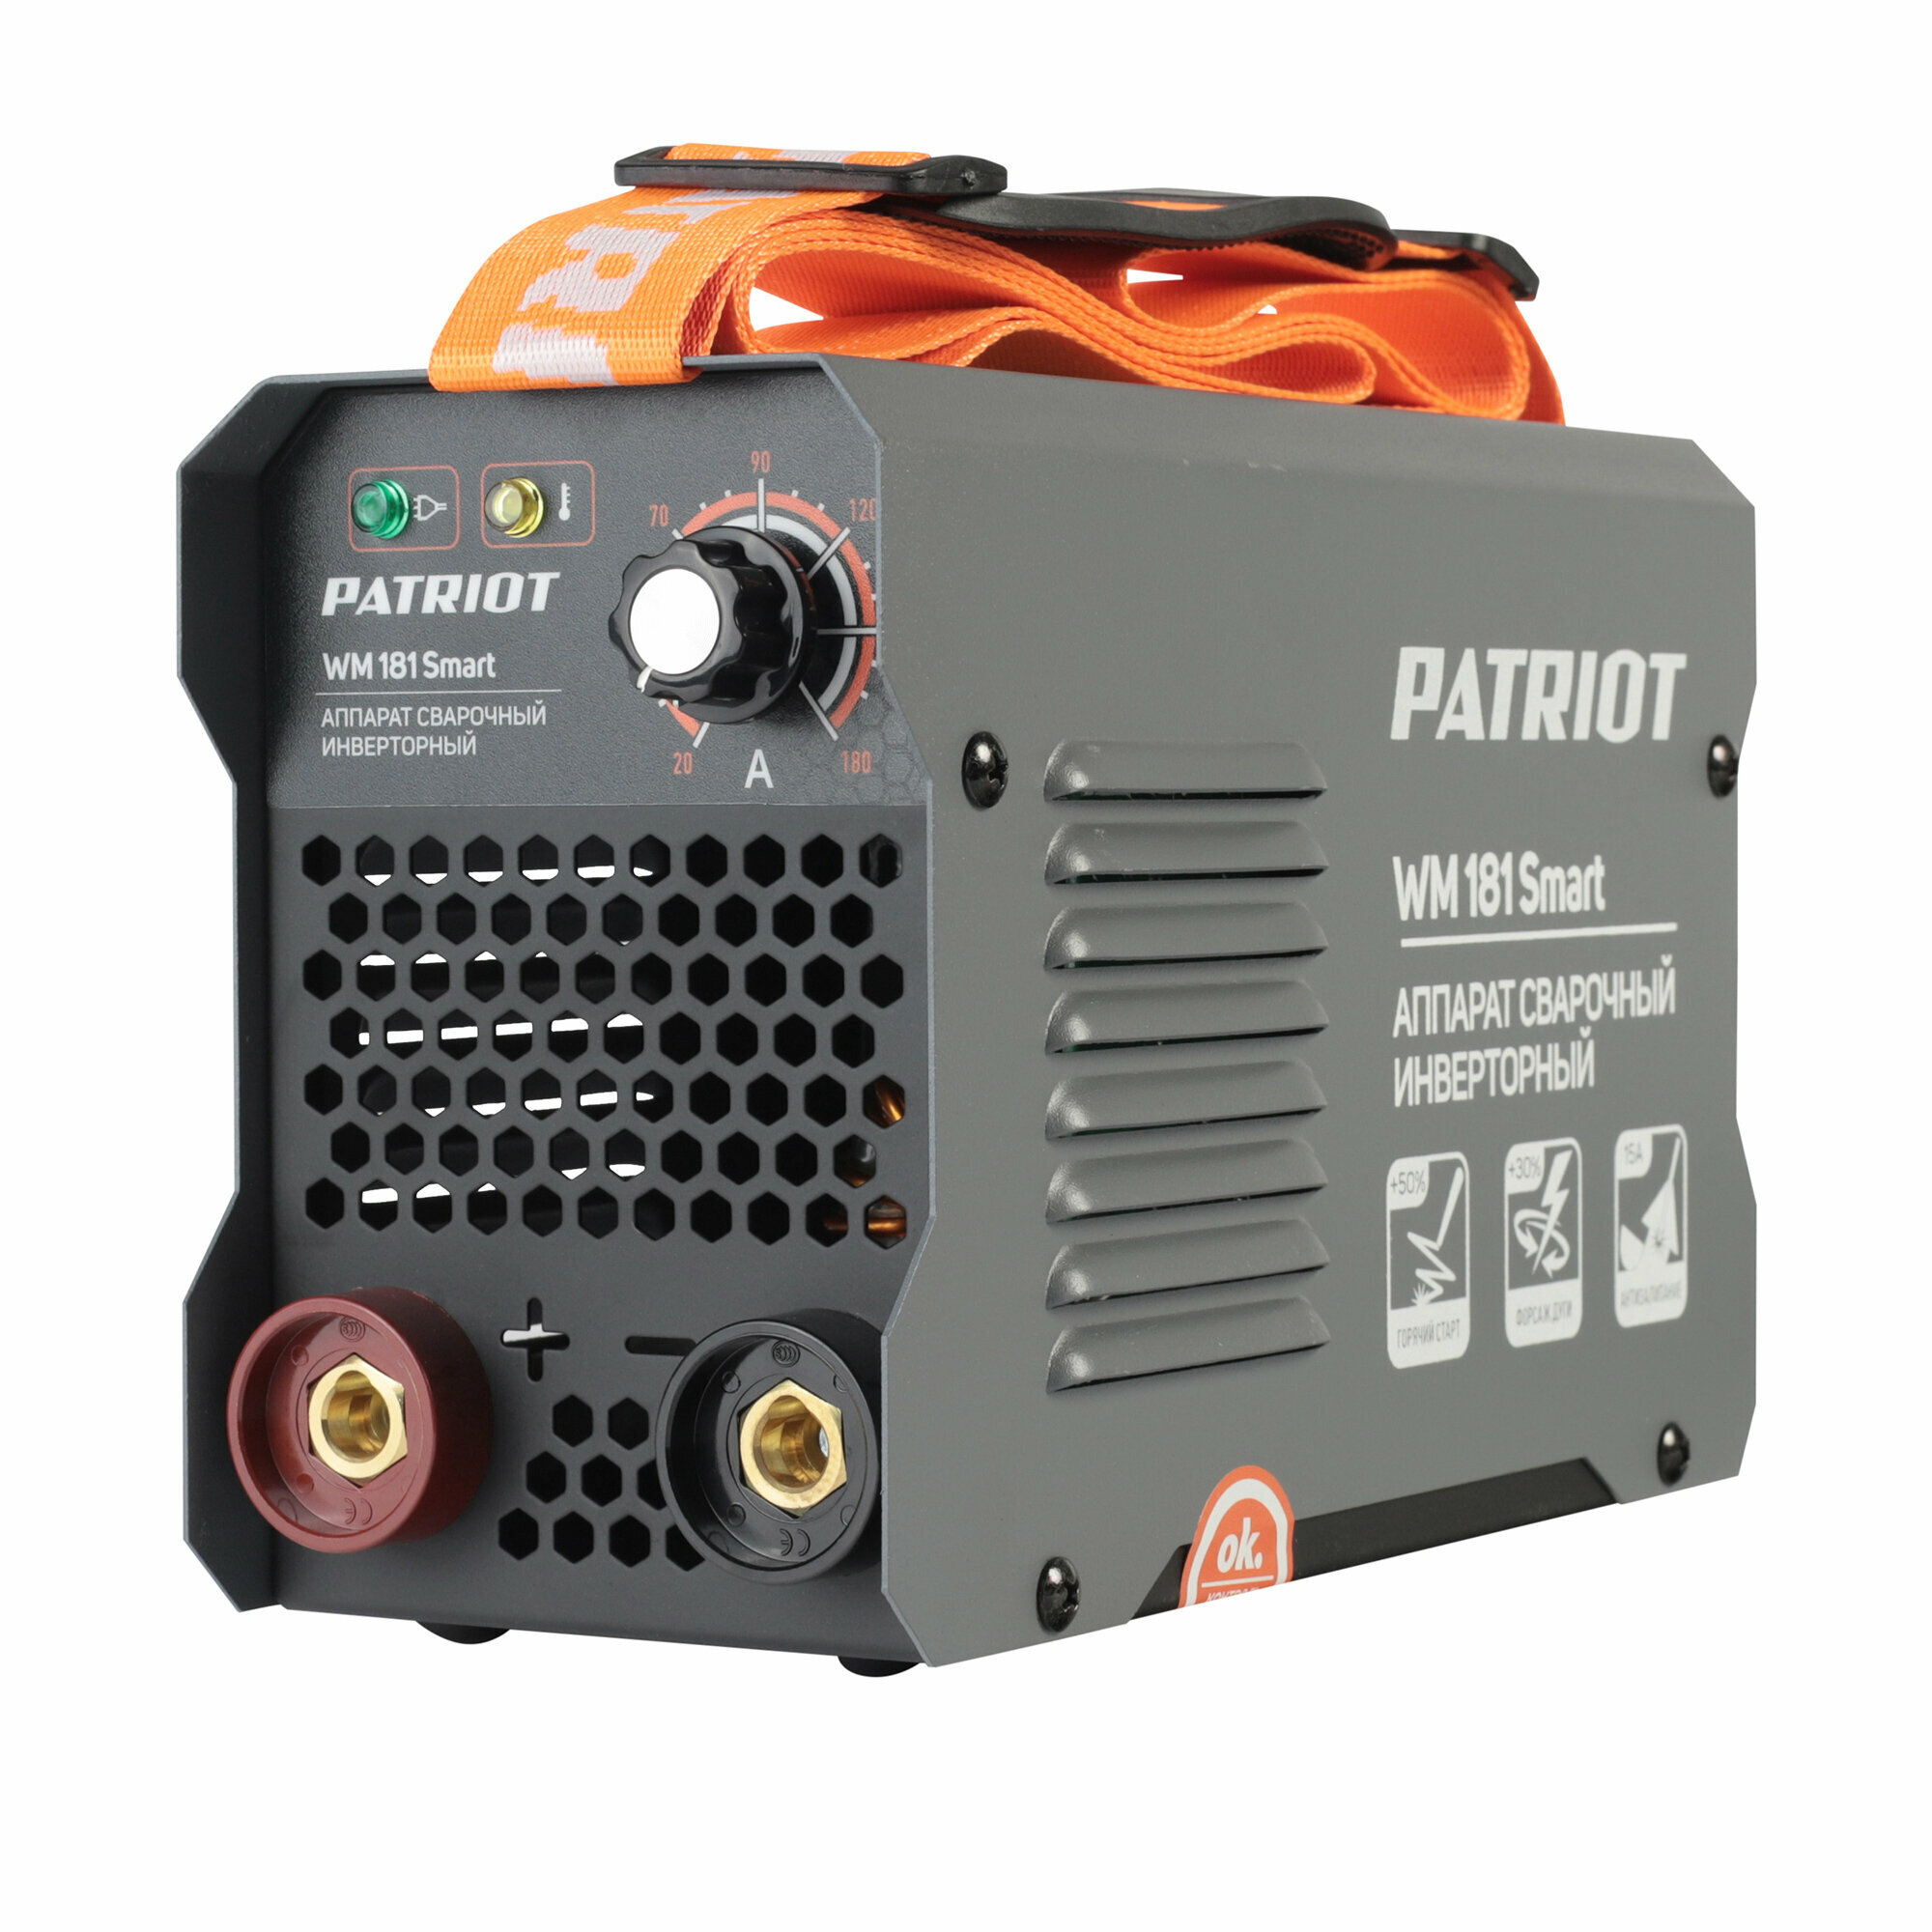 Сварочный инвертор Patriot WM 181Smart MMA 605302293 / 7,2 кВт / горячий старт / форсаж дуги / маска сварщика 301D в подарок